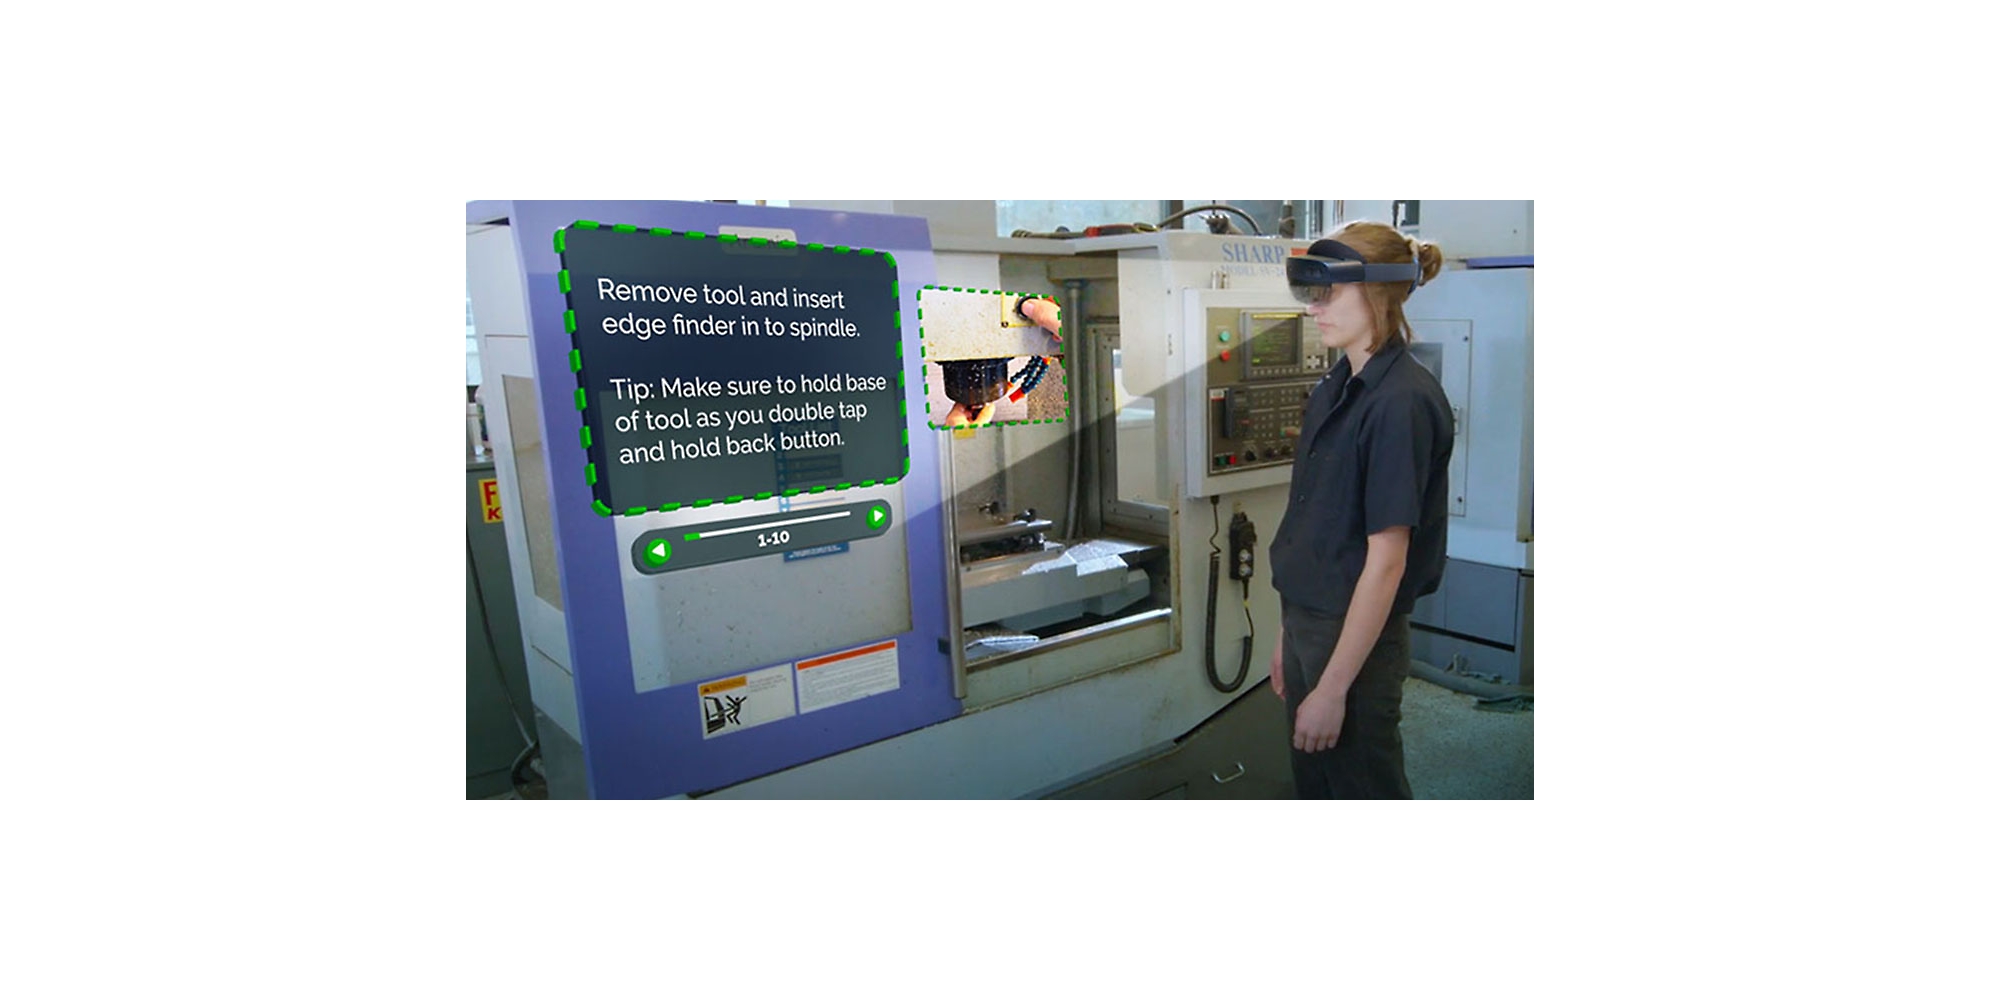 Човек, носещ HoloLens 2, гледа видеоклип, в който се описва как да се изпълни конкретна задача с придружаващи инструкции в смесена реалност.